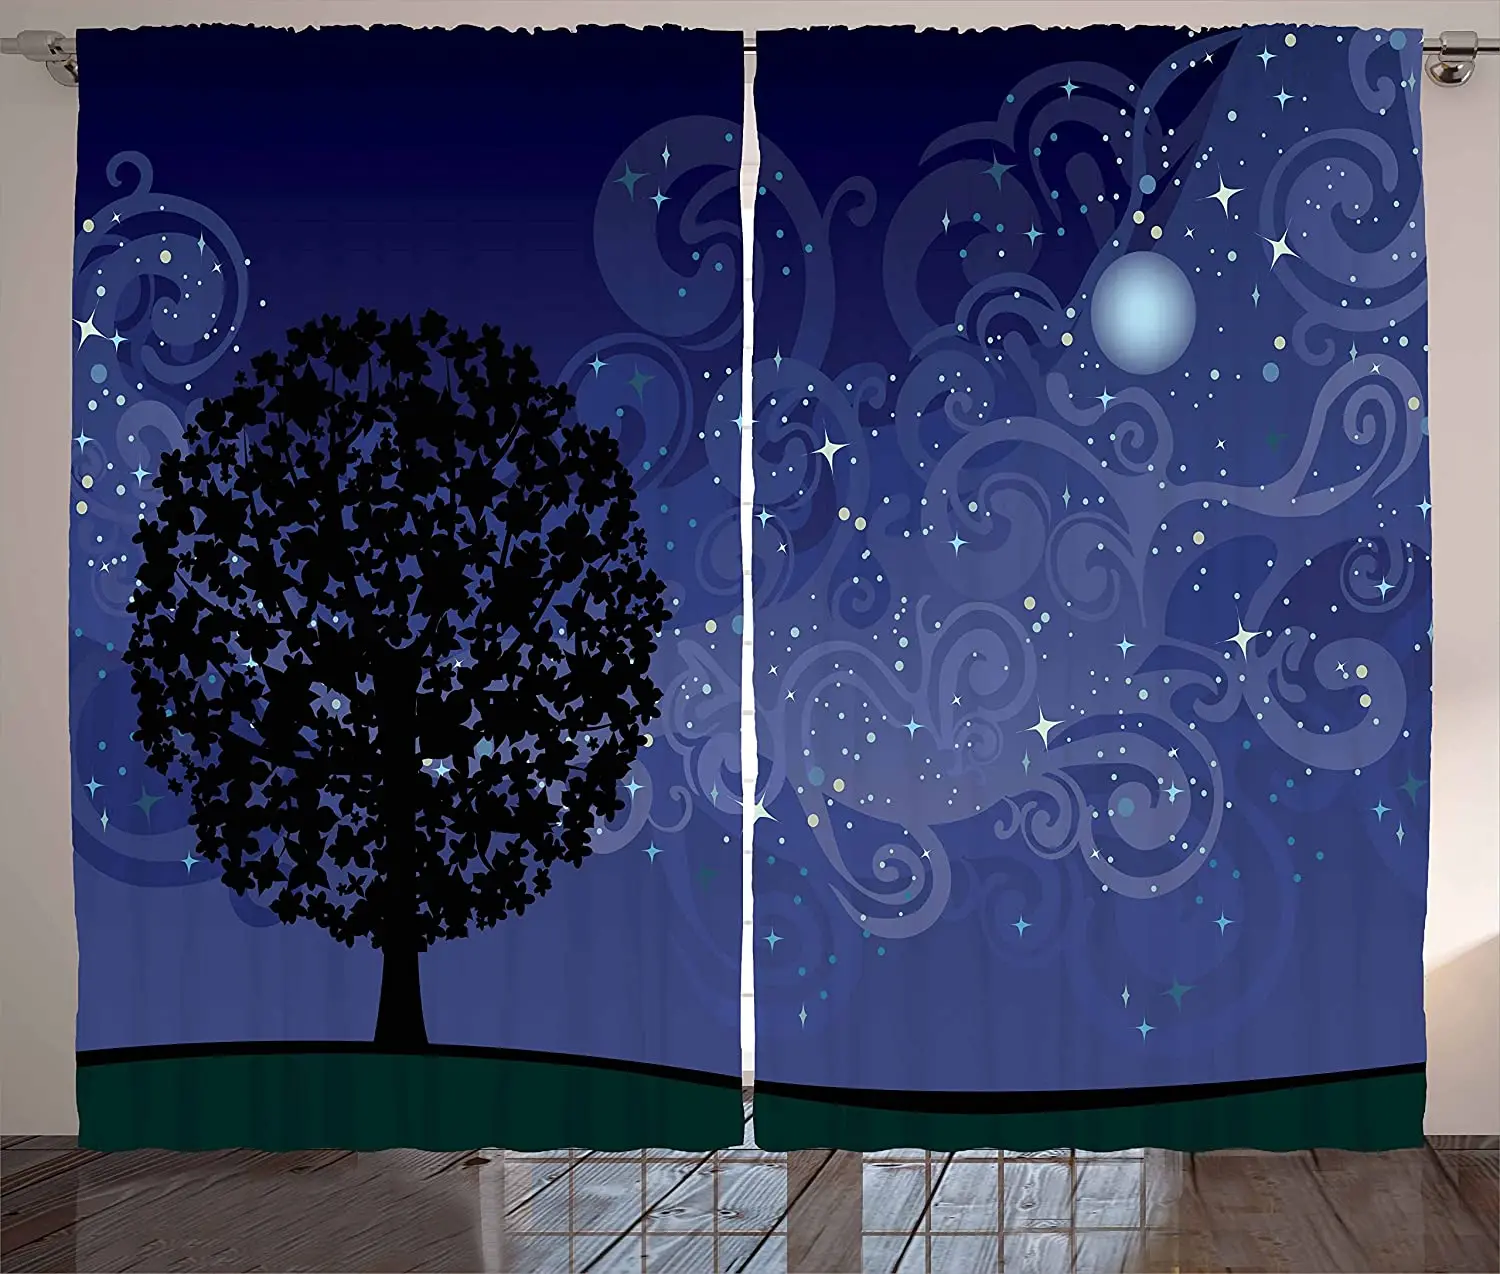 

Светонепроницаемые шторы Звездная ночь дерево на горе заполненное звездой небо и луна Млечный Путь галактика оконная занавеска